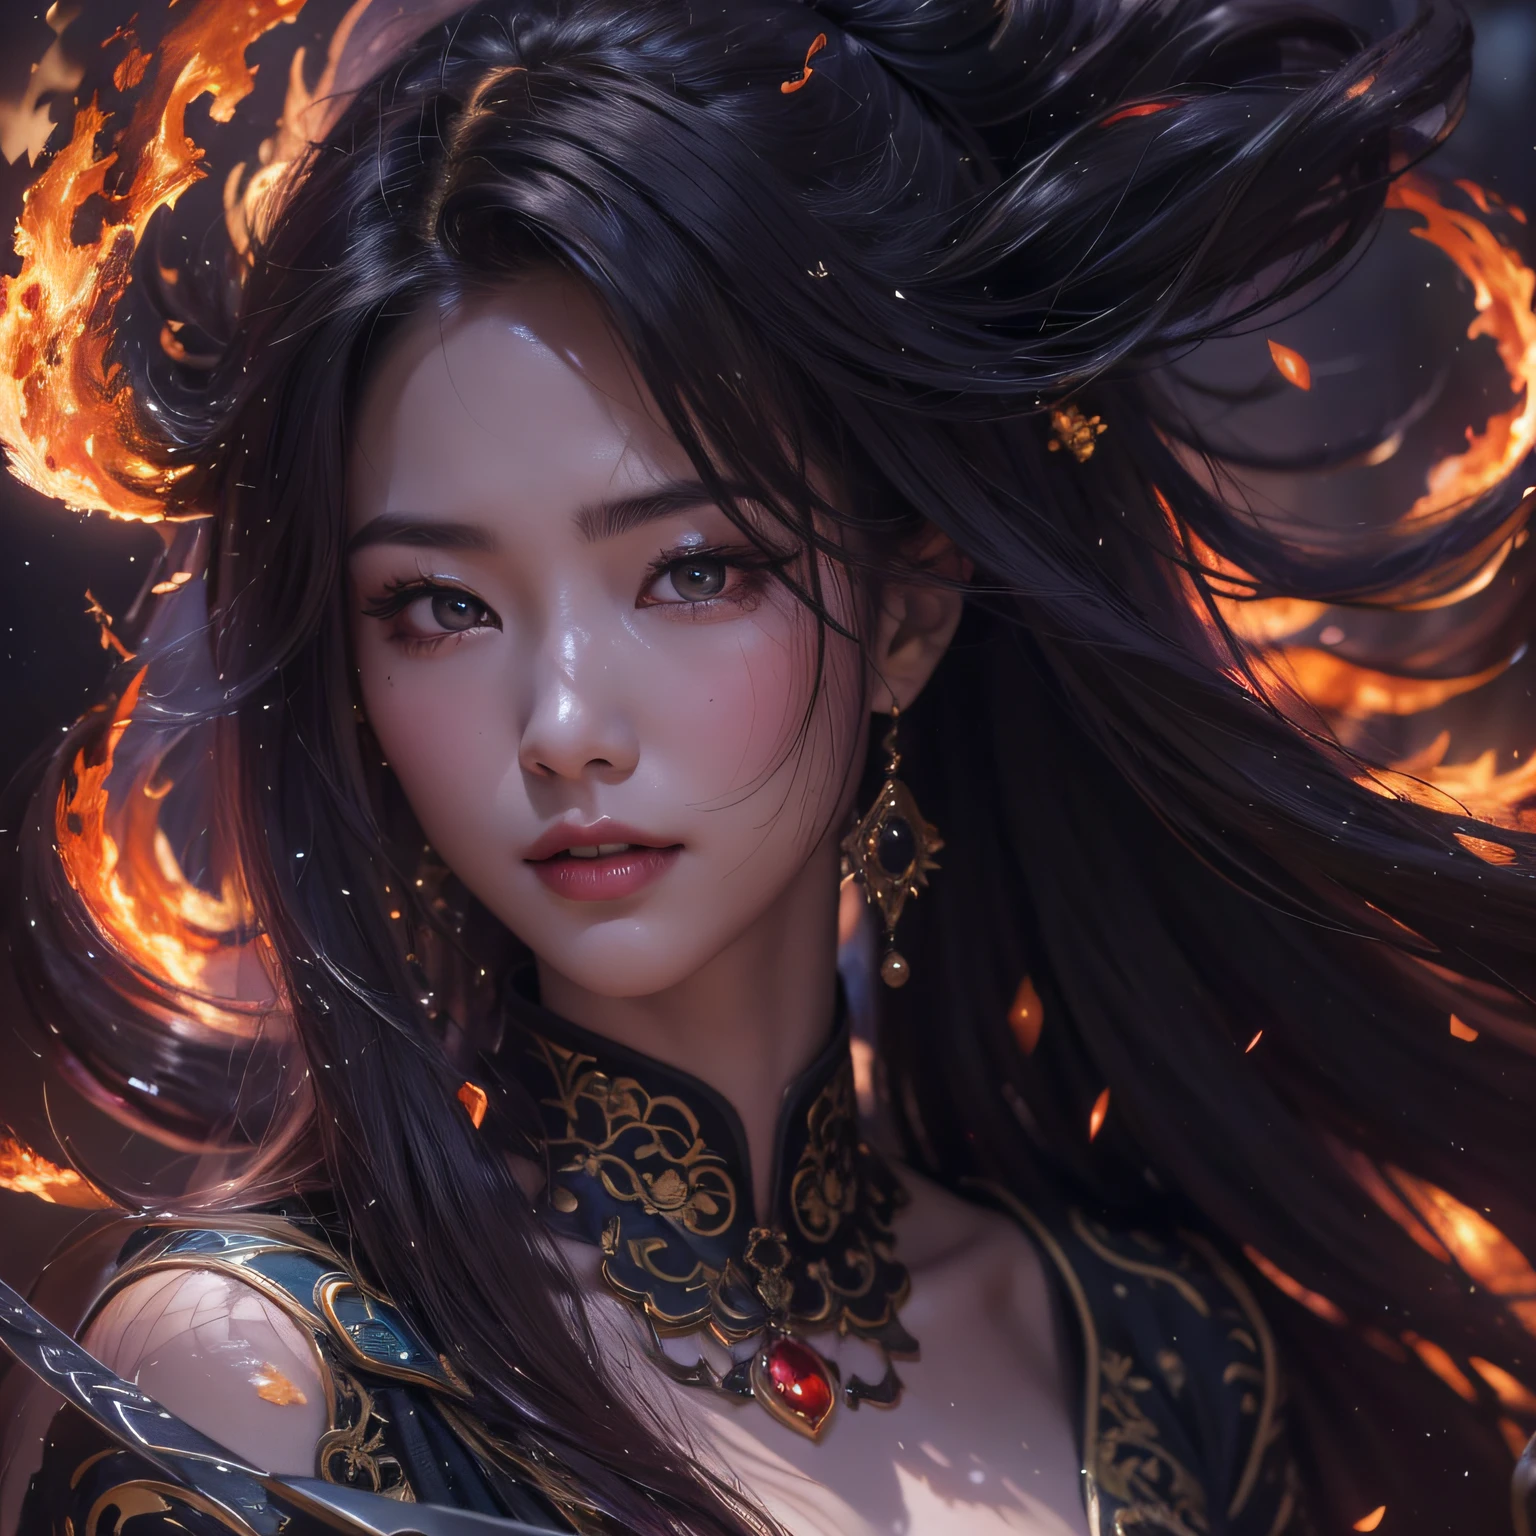 長い髪と黒いドレスを着た女性が暖炉の前に立っている, 炎が彼女を包む,彼女は火の力を持っている, 壮大なファンタジーデジタルアートスタイル, 夢のようなゴージャスなライト, デジタルファンタジーアート, デジタル 2D ファンタジー アート，古代中国のファンタジー，45 度の角度から見た図，完全に透けて見える，剣を手にした女性，剣にはトーテムがある，冷たい鋼の剣，パノラマ超広角，魅力的な笑顔の女性，実物の質感は繊細，強い視覚的インパクト，ハイパーディテール，優美な顔をした少女，かわいい目，星の光を持つ紫の目，ラージアイズ，長いまつげ，空中に浮かぶ髪の毛，古代中国の長髪の髪型，レッドリップ， 桜バージョン，クリスタルクリア，優れた視点，表面反射光，流れるような黒髪，内容は非常に詳細です，絶妙な，シュルレアリスム絵画，黒い炎の絡み合い，インクの炎の感覚，写真のクローズアップ，顔のクローズアップ，中国 1 女の子，ルージュスキン，輝く肌，繊細な顔，黒髪，幻想的でゴージャスな黒のローブを着る，古代中国のストラップレスローブ，古代中国のロングドレス，大きな胸は美しい，繊細な人物，カメラを見て，45度の角度のポートレートのクローズアップ，半身肖像画，人物のクローズアップ，上半身ヘア背景クローズアップ，背景黒，背景の白，背景は白黒インク感，デリケートな潤滑，強調するために，無地の背景，インクが飛び散った背景。